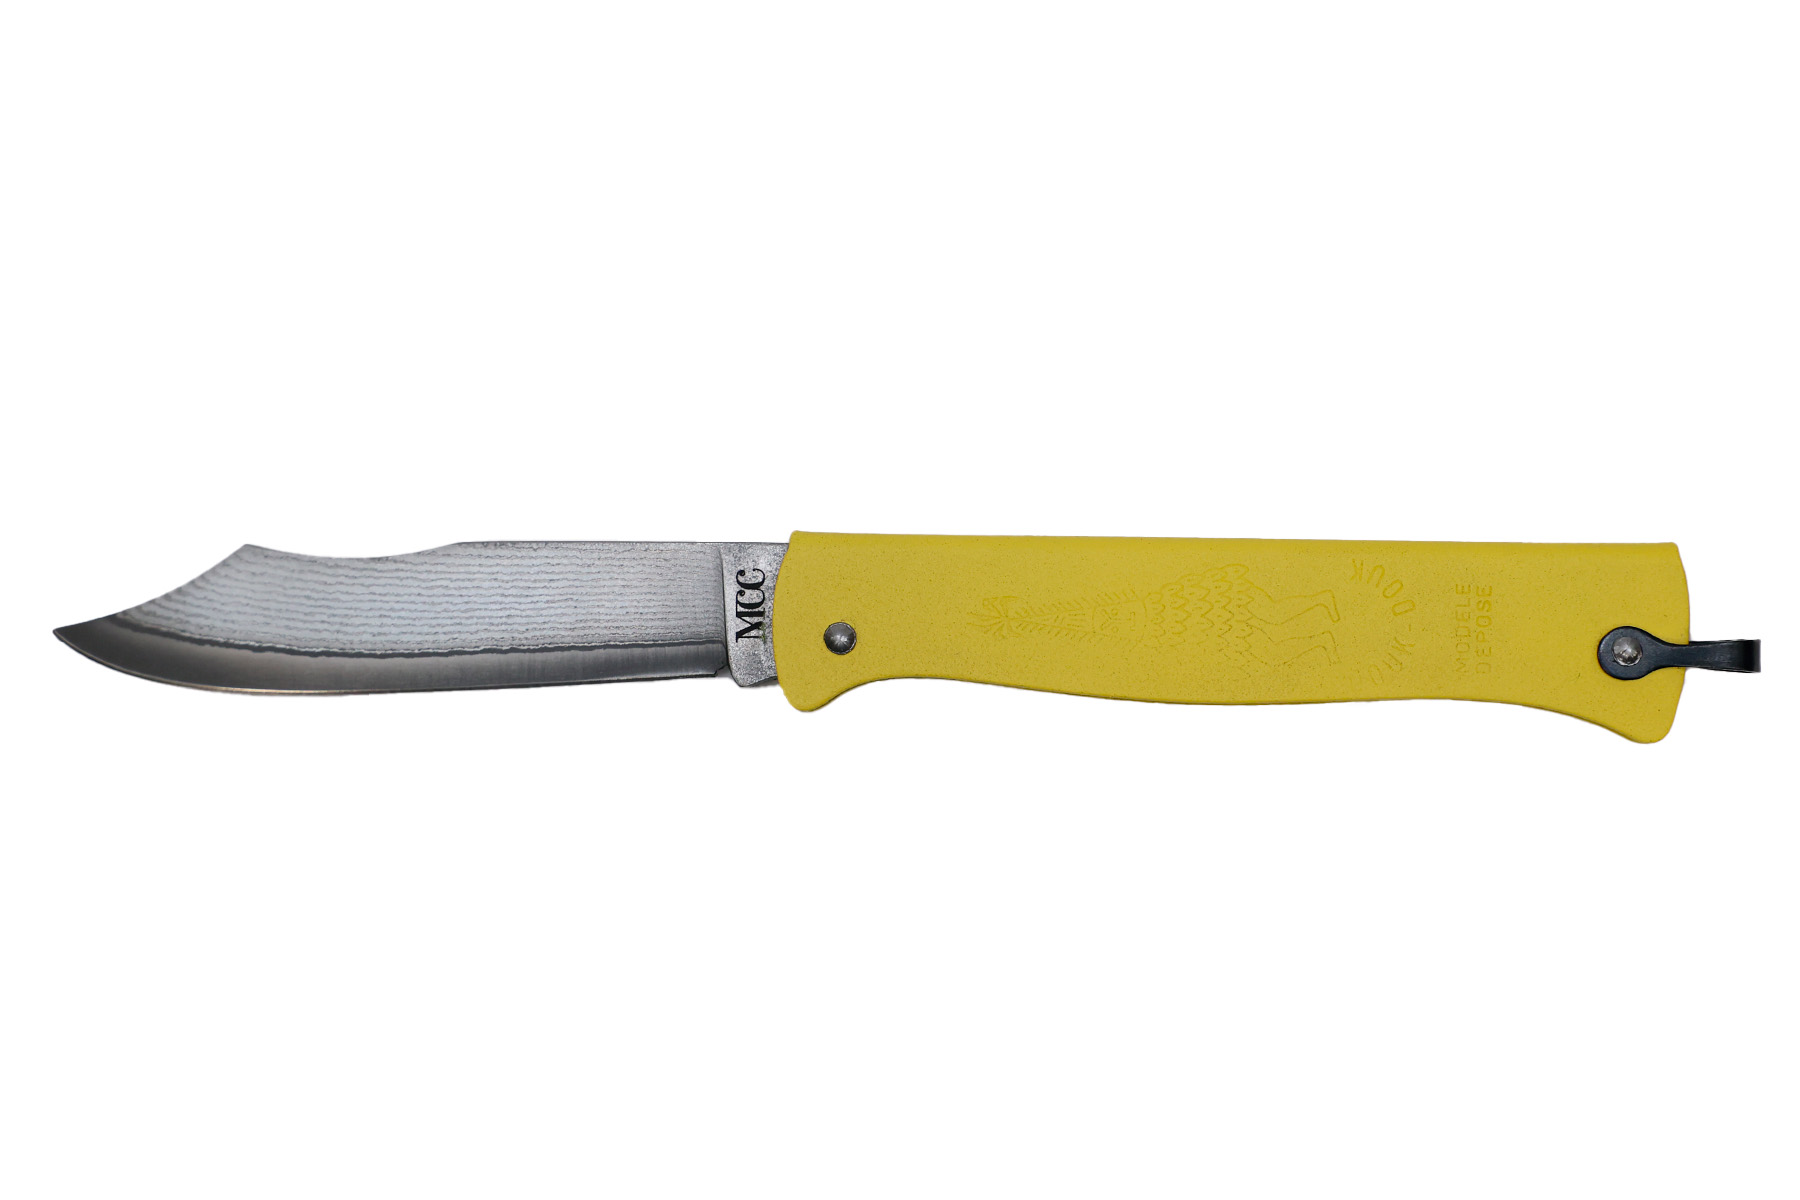 Couteau pliant Douk-Douk de Cognet " VG10 damas" série limitée - Jaune